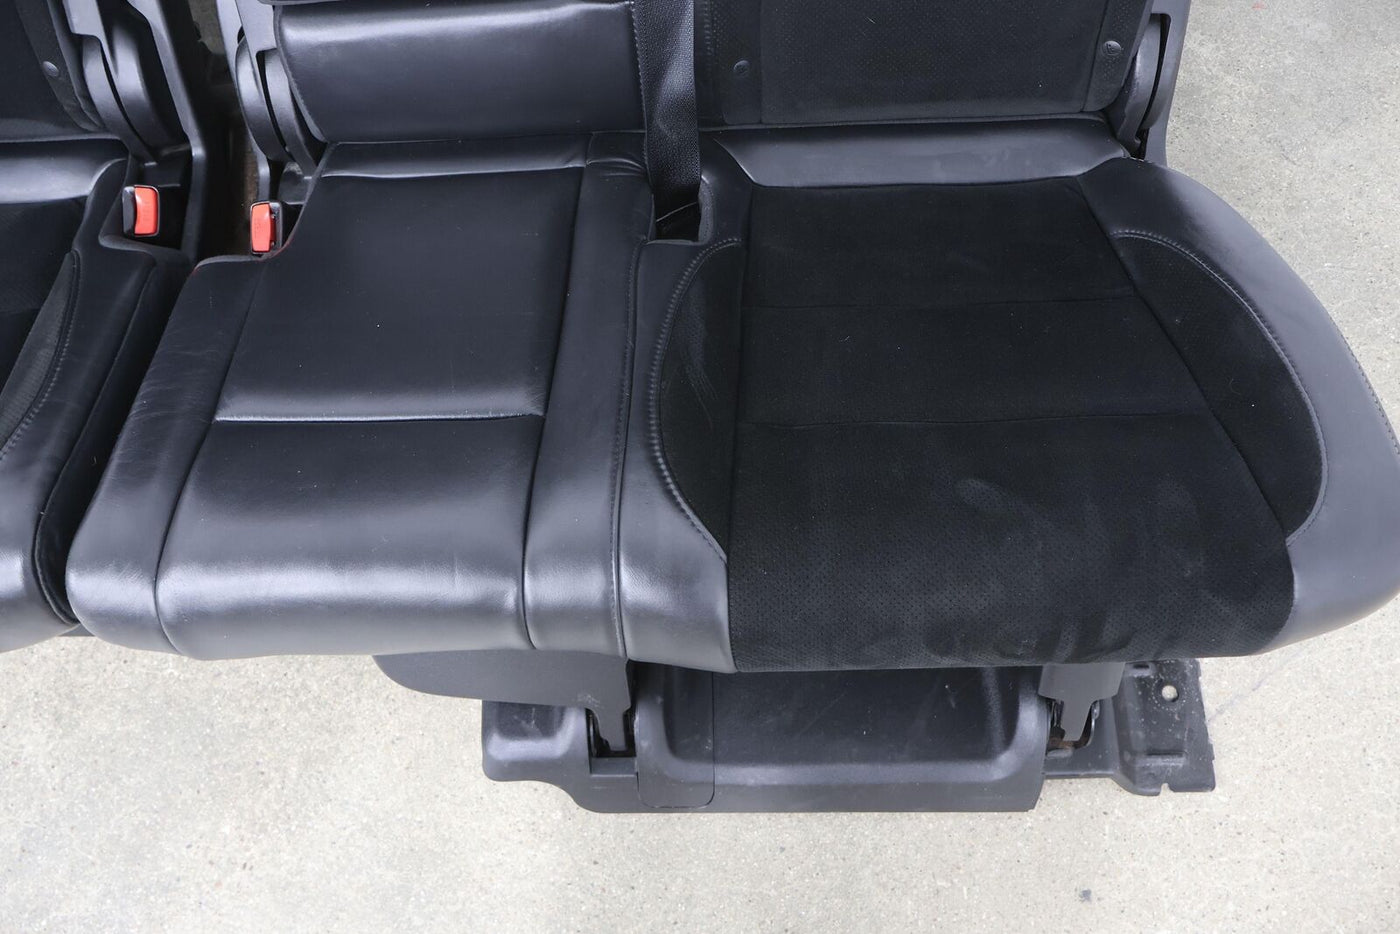 2015 Jeep Grand Cherokee SRT8 Leather/Alacantara Seat Set (Black) Heated/Cooled